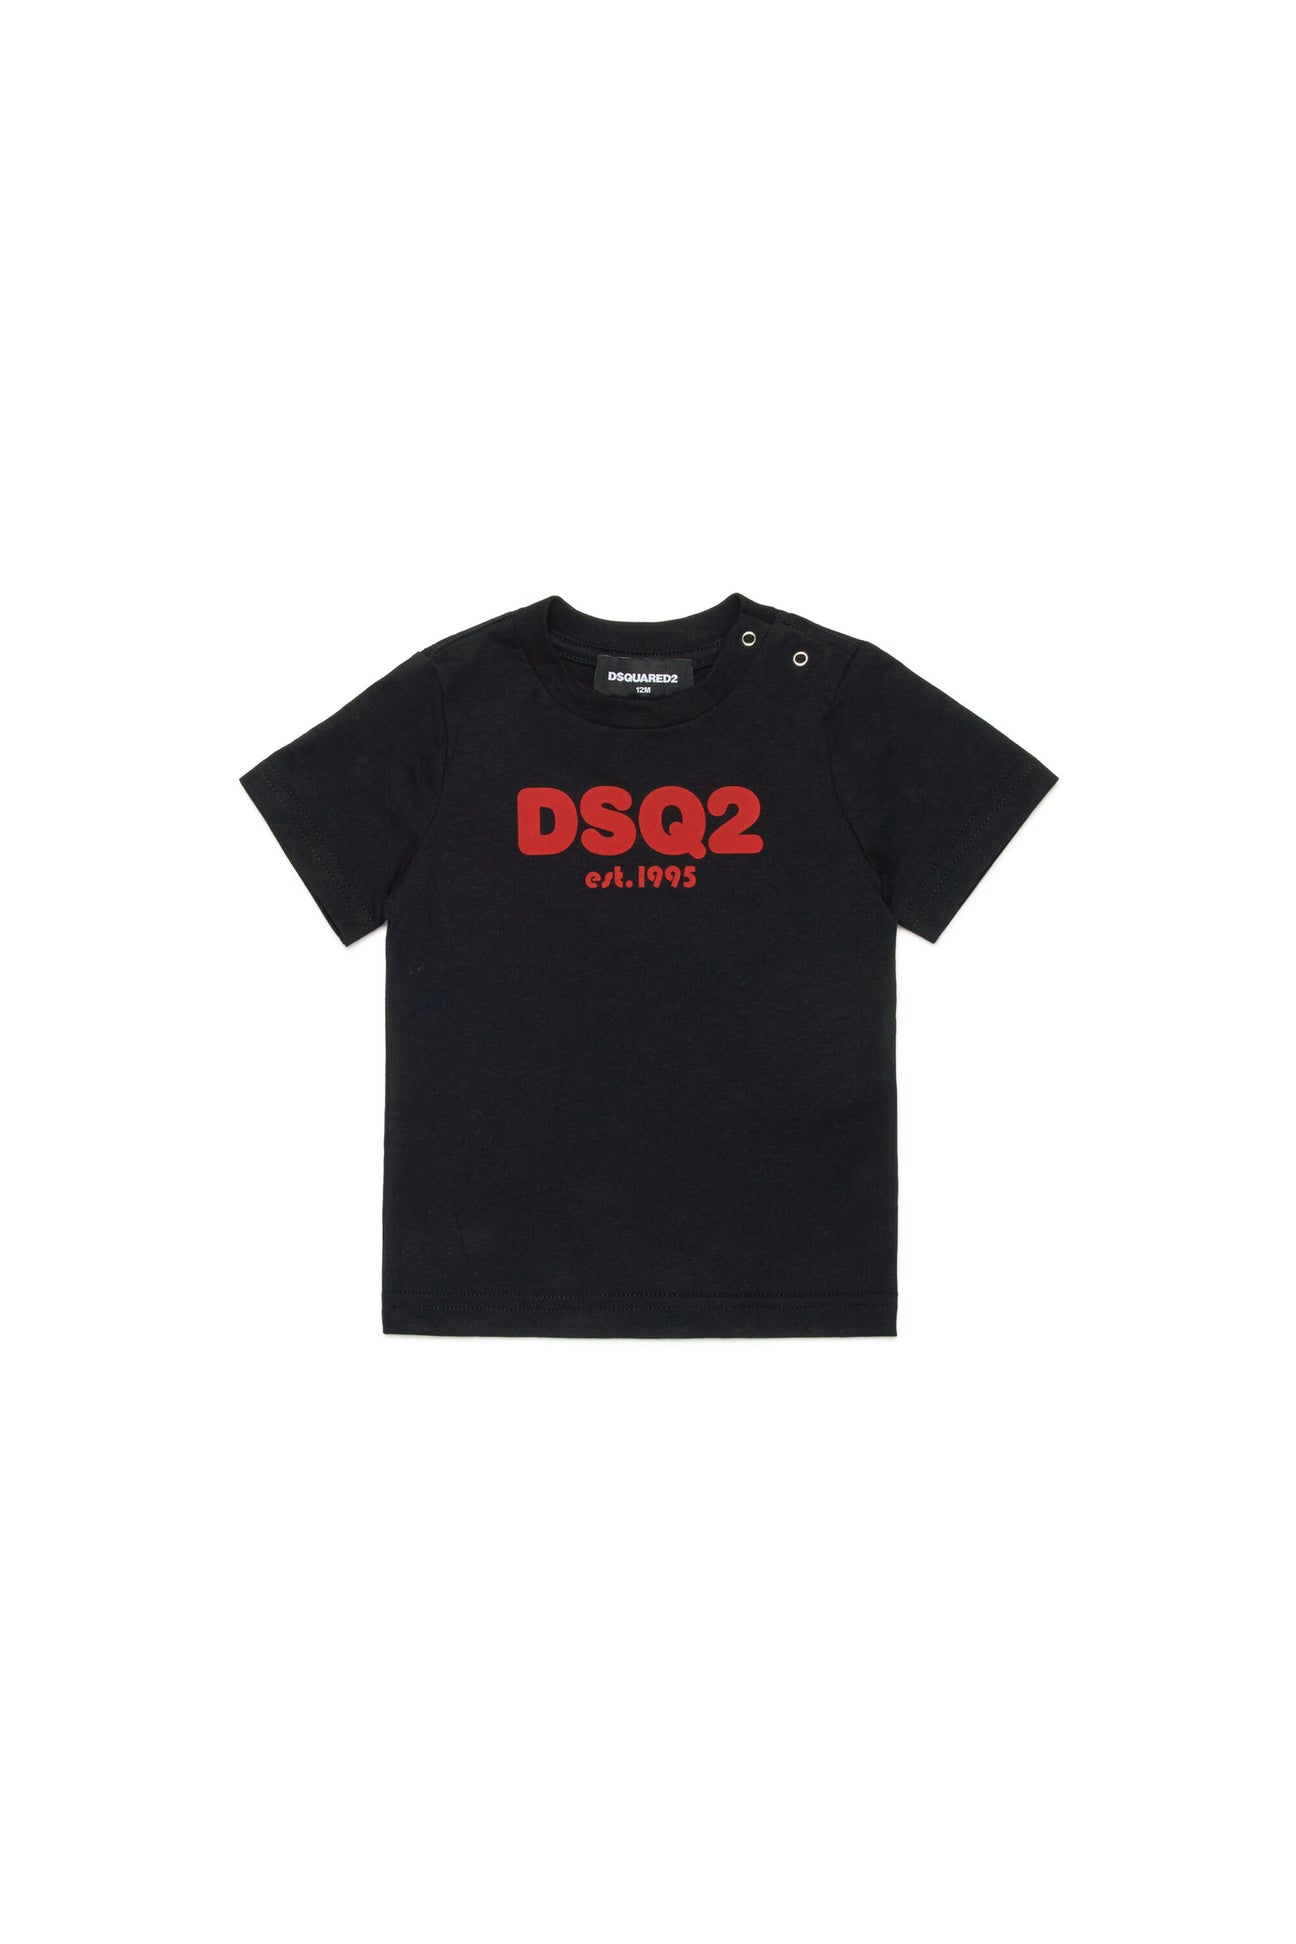 Camiseta con logotipo DSQ2 est.1995 